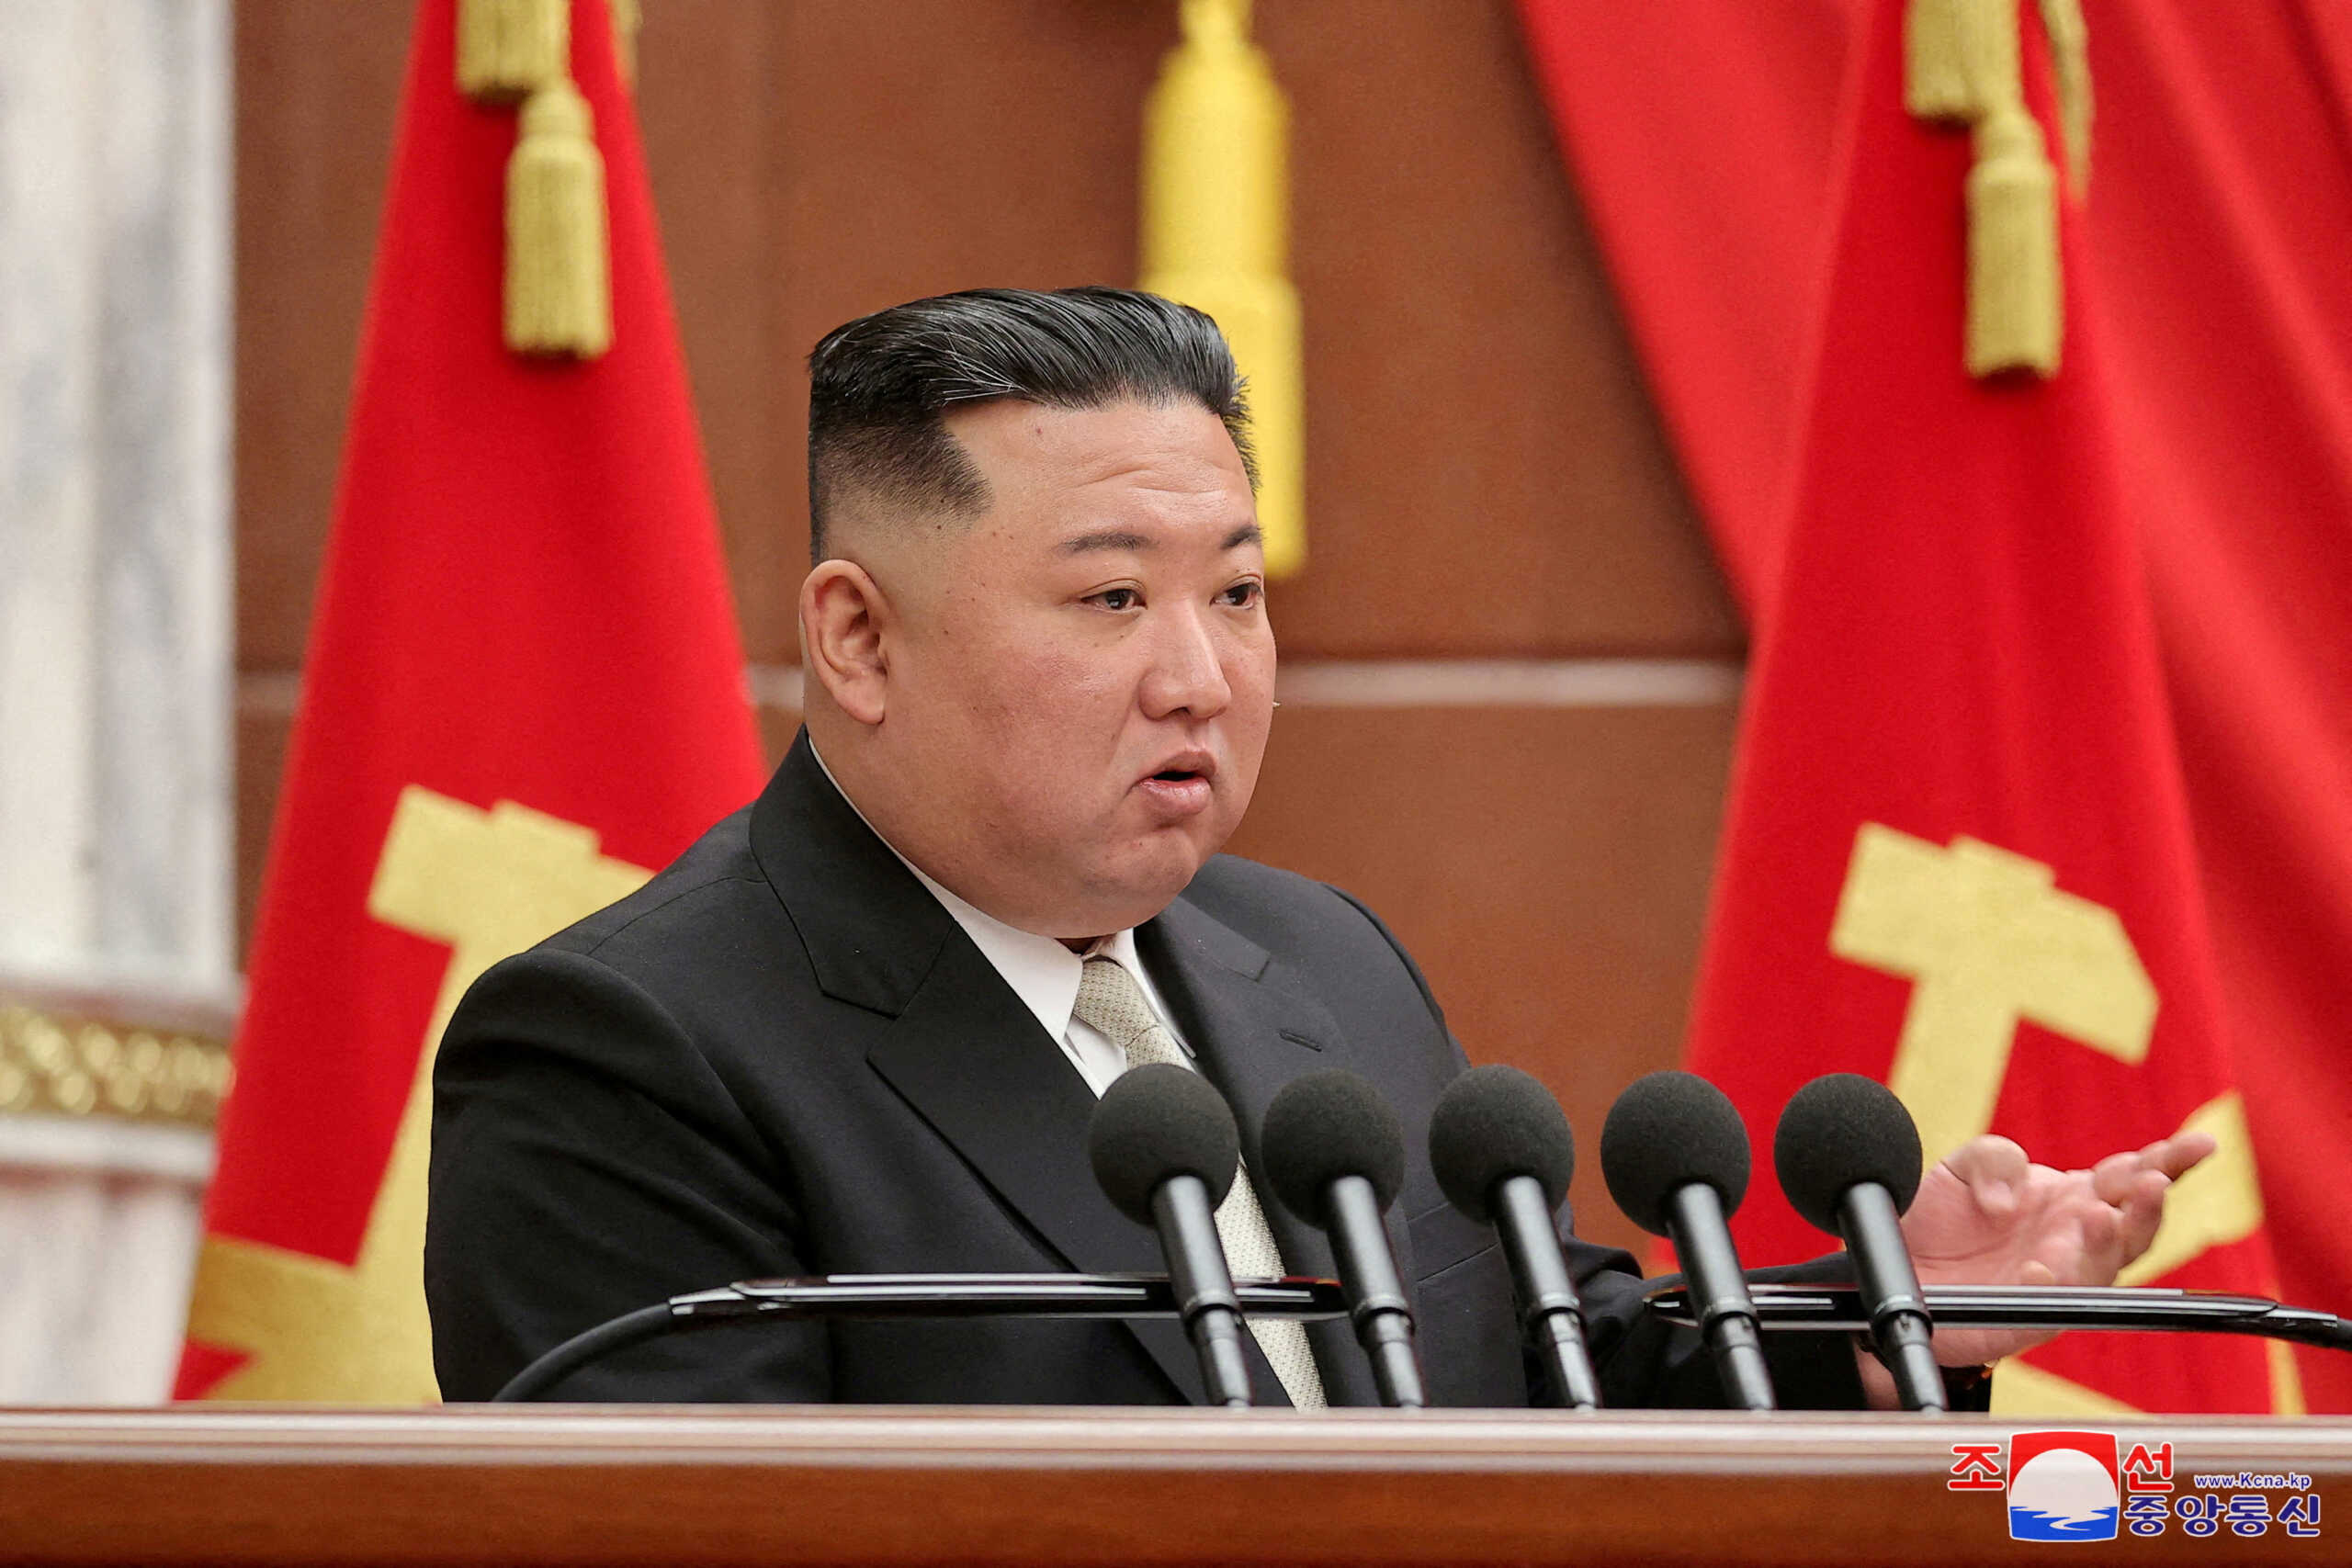 Ο Κιμ Γιονγκ Ουν κάλεσε να ενισχυθούν οι δυνατότητες αποτροπής της Βόρειας Κορέας